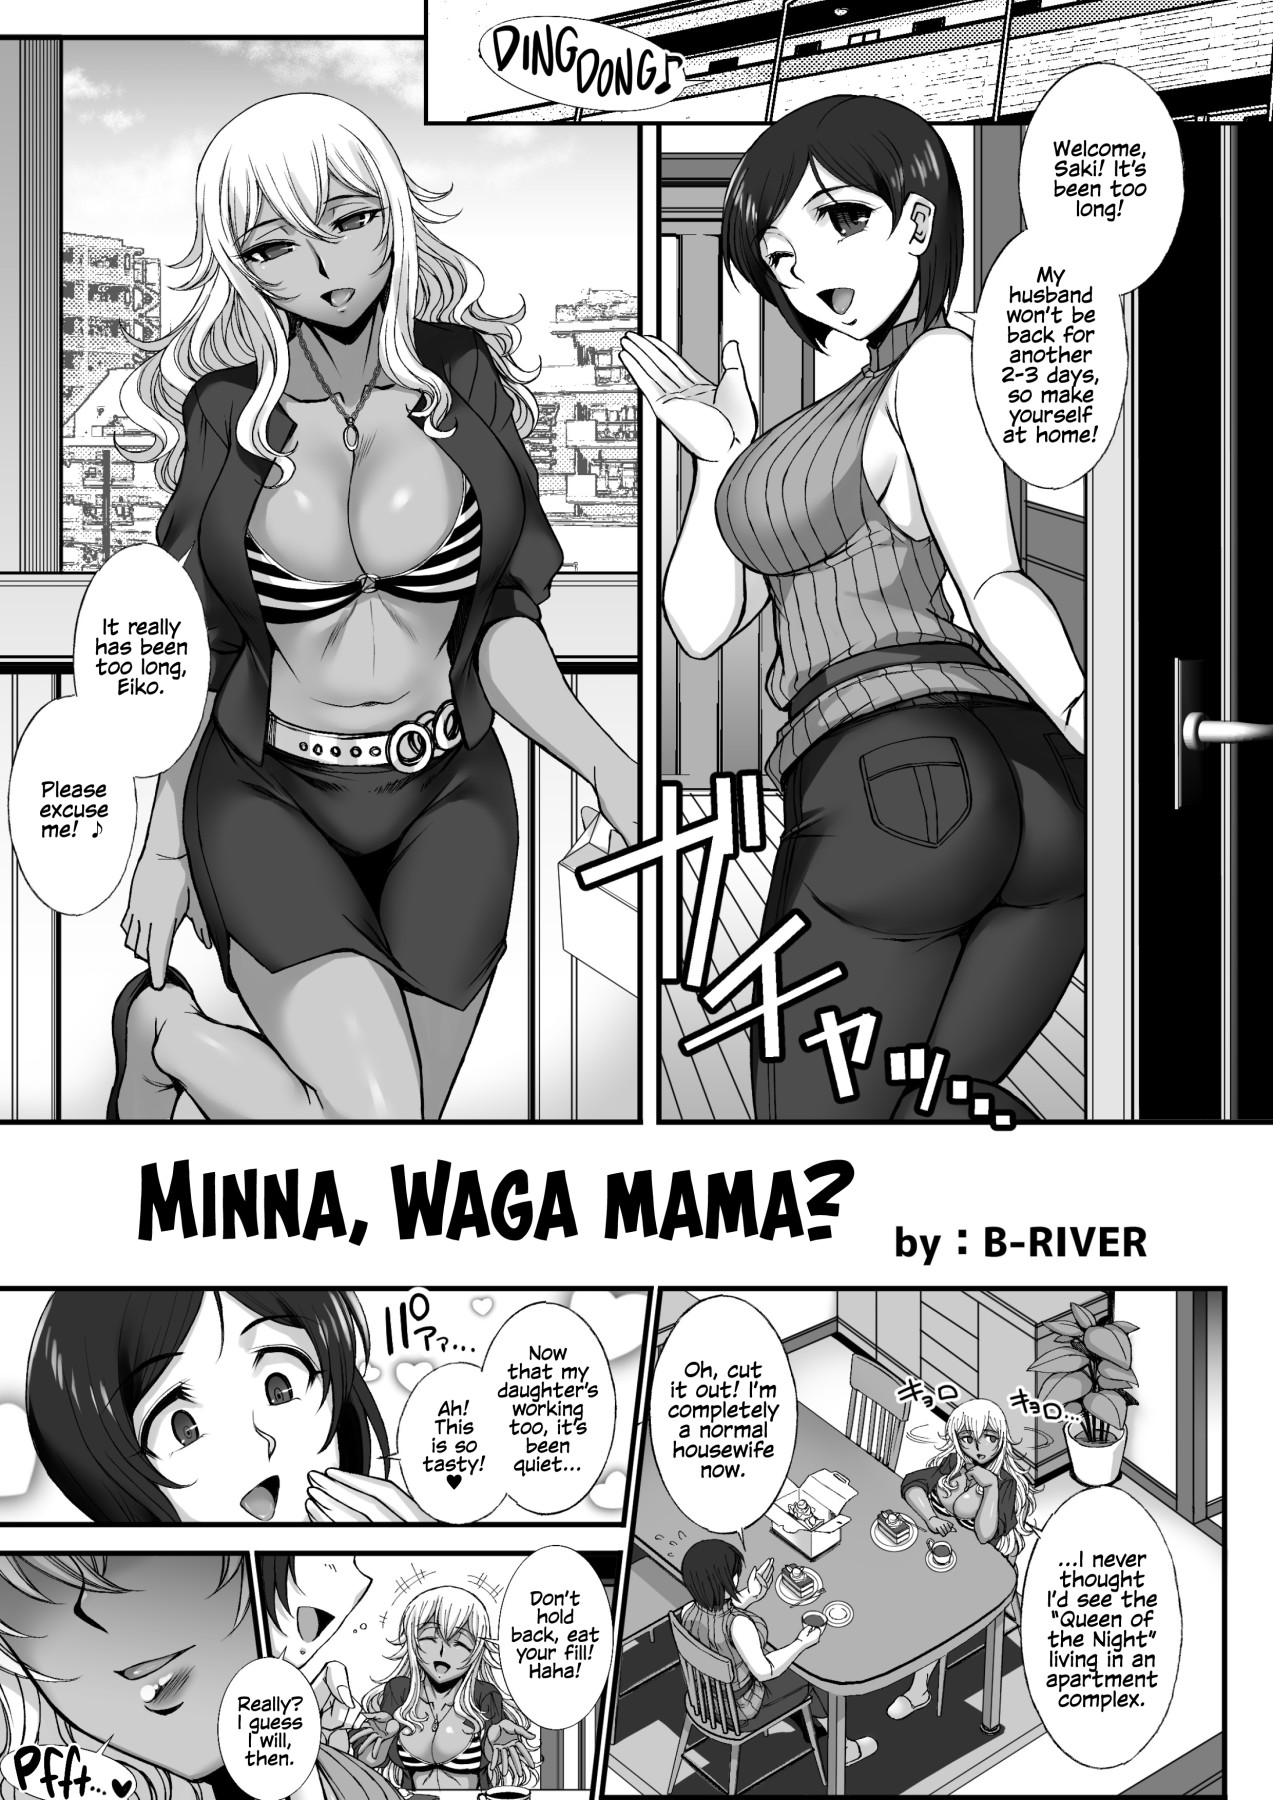 Hentai Manga Comic-Everyone's Having Their Own Way?-Read-1